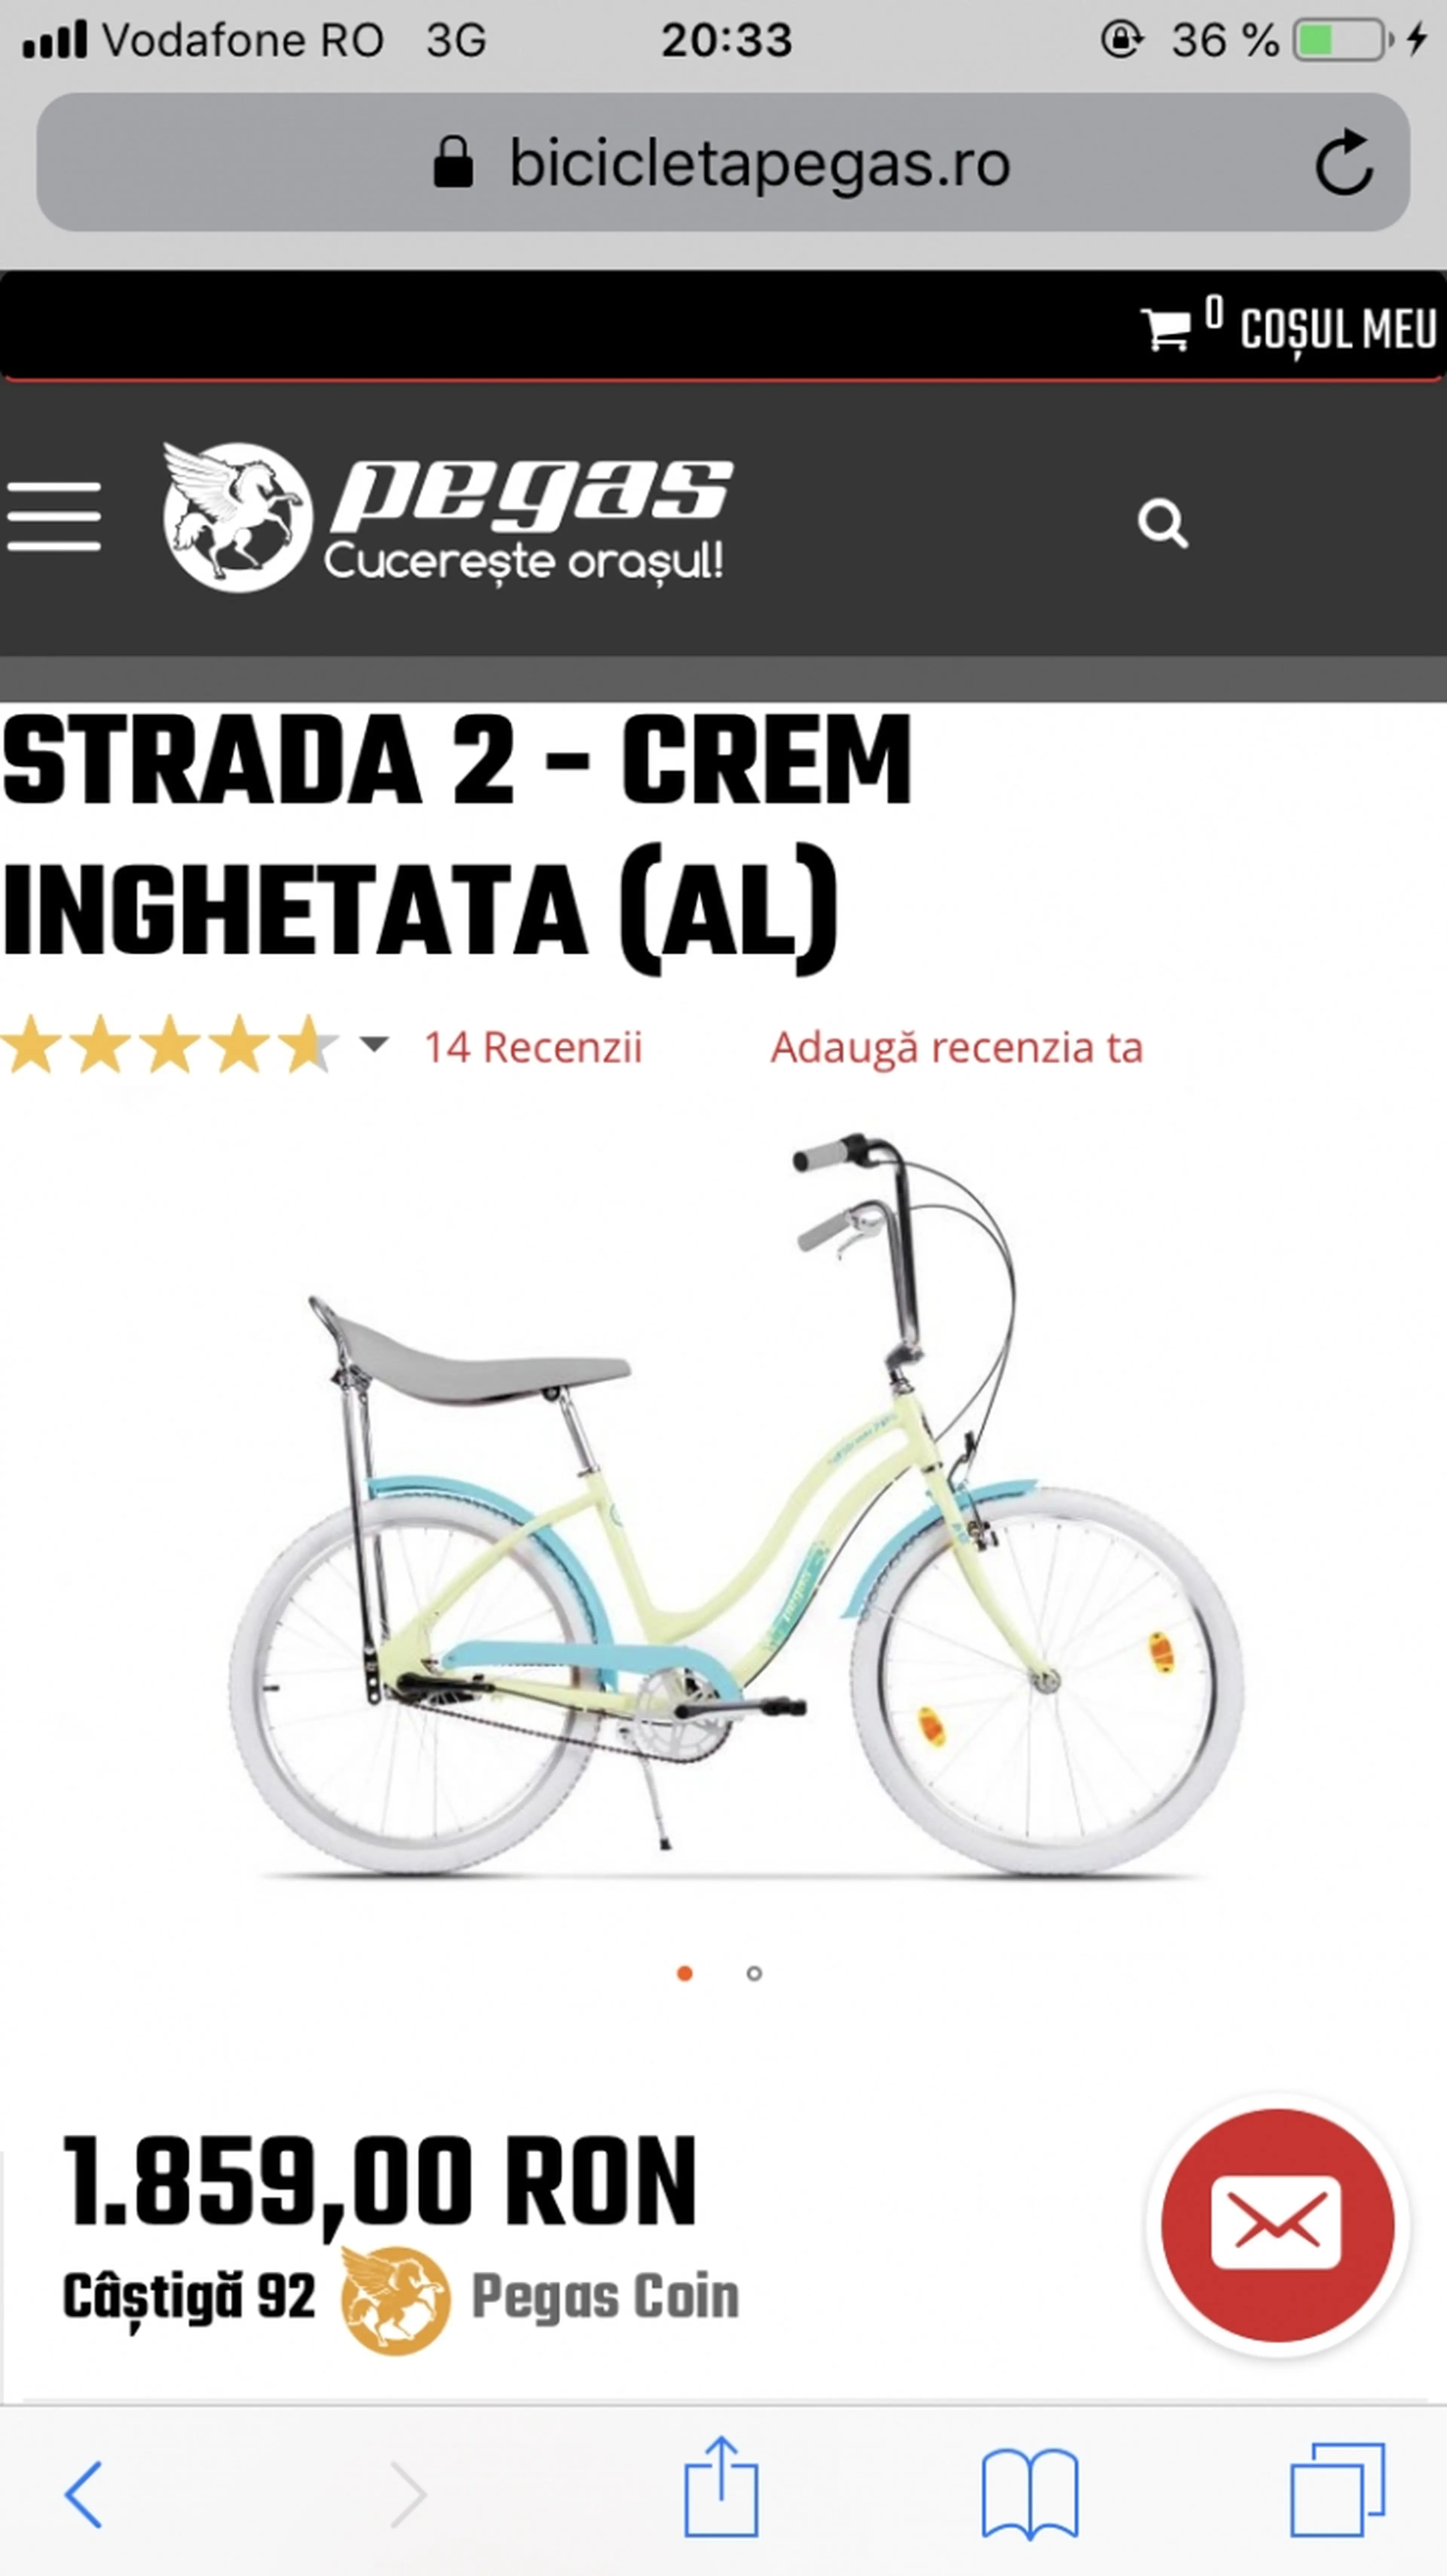 Image Vand bicicleta Pegas model STRADA 2 - CREM INGHETATA